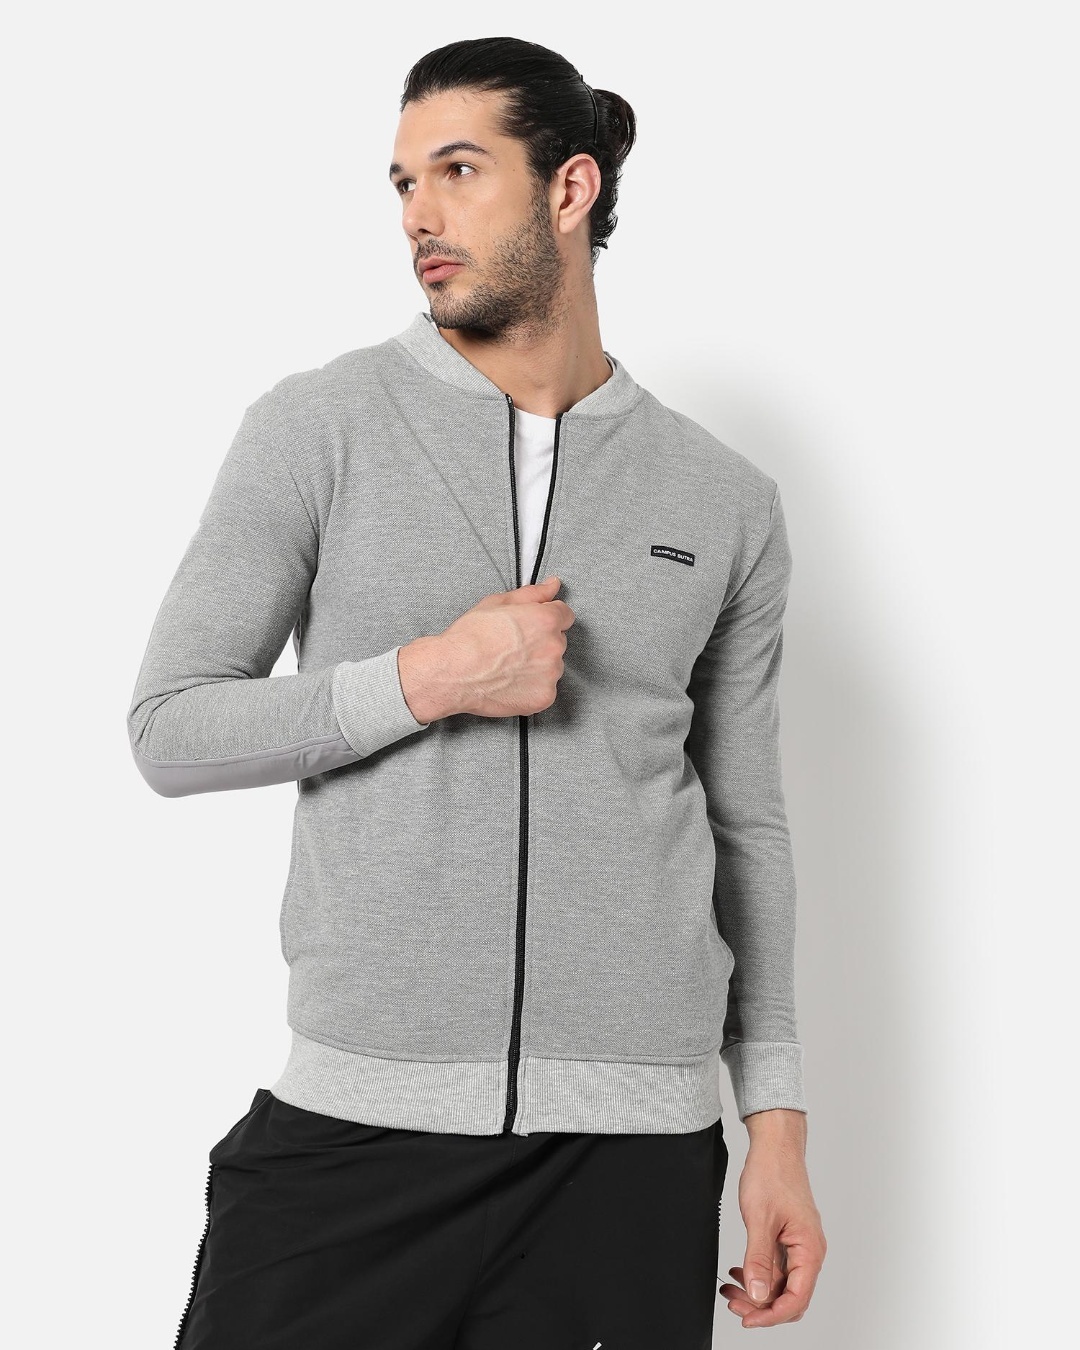 Buy Men's Grey Jacket for Men Grey Online at Bewakoof